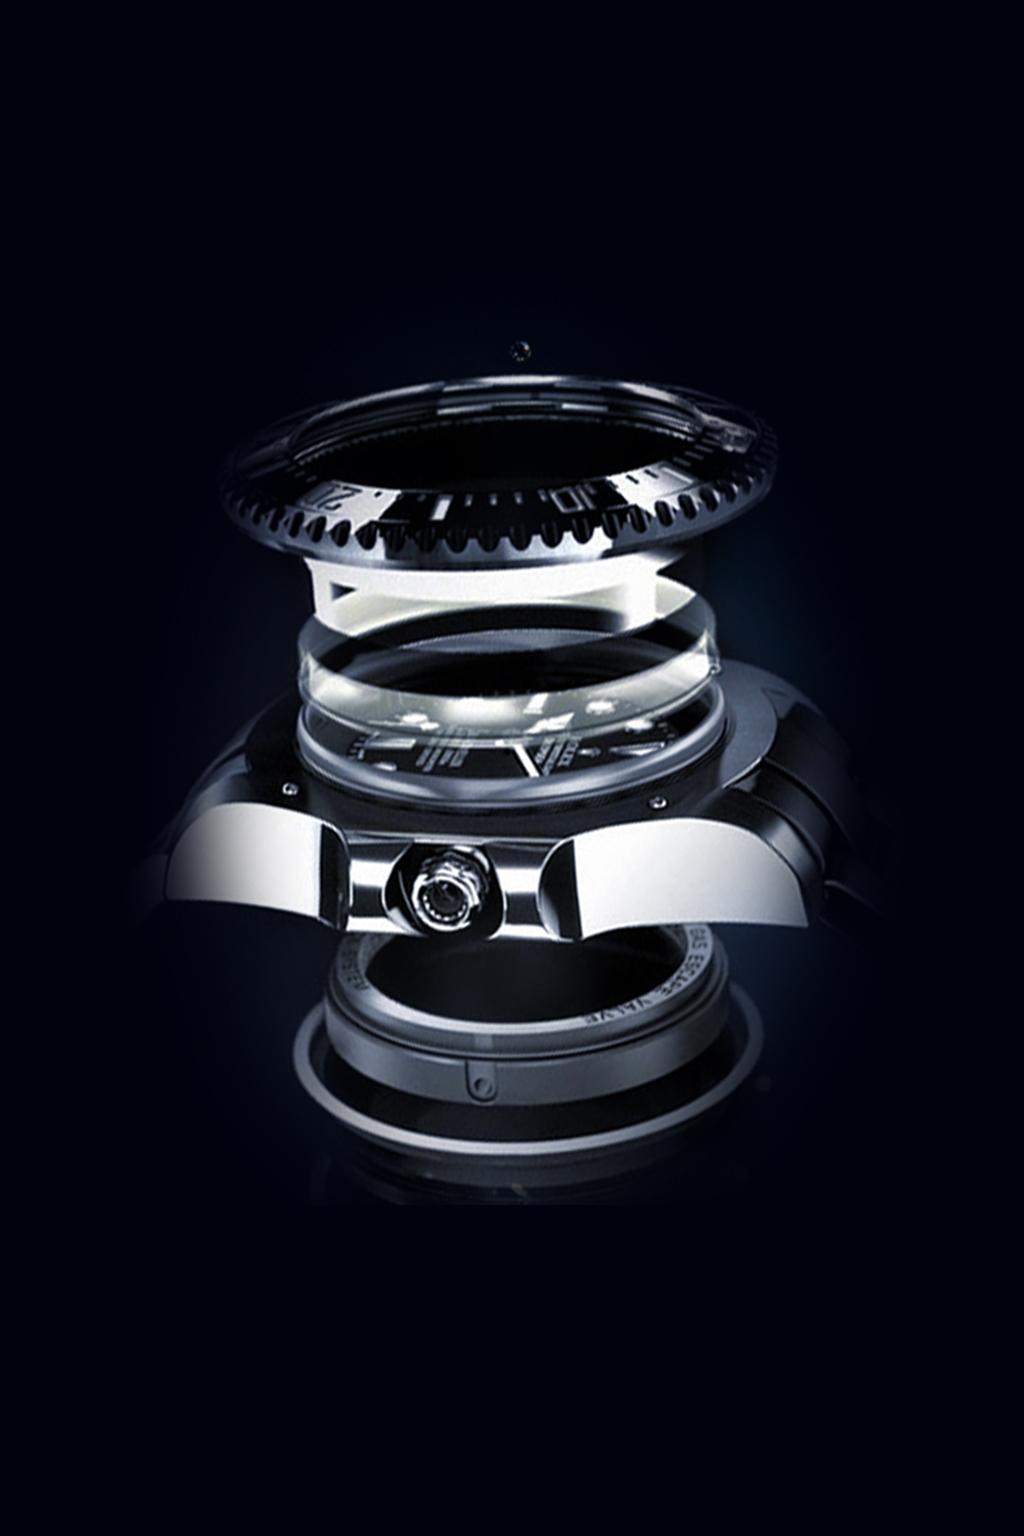 Las funciones del Rolex Deepsea EL SISTEMA RINGLOCK El Ringlock System, una exclusiva innovación técnica, permite que el cristal de la caja del Rolex Deepsea soporte una presión equivalente al peso